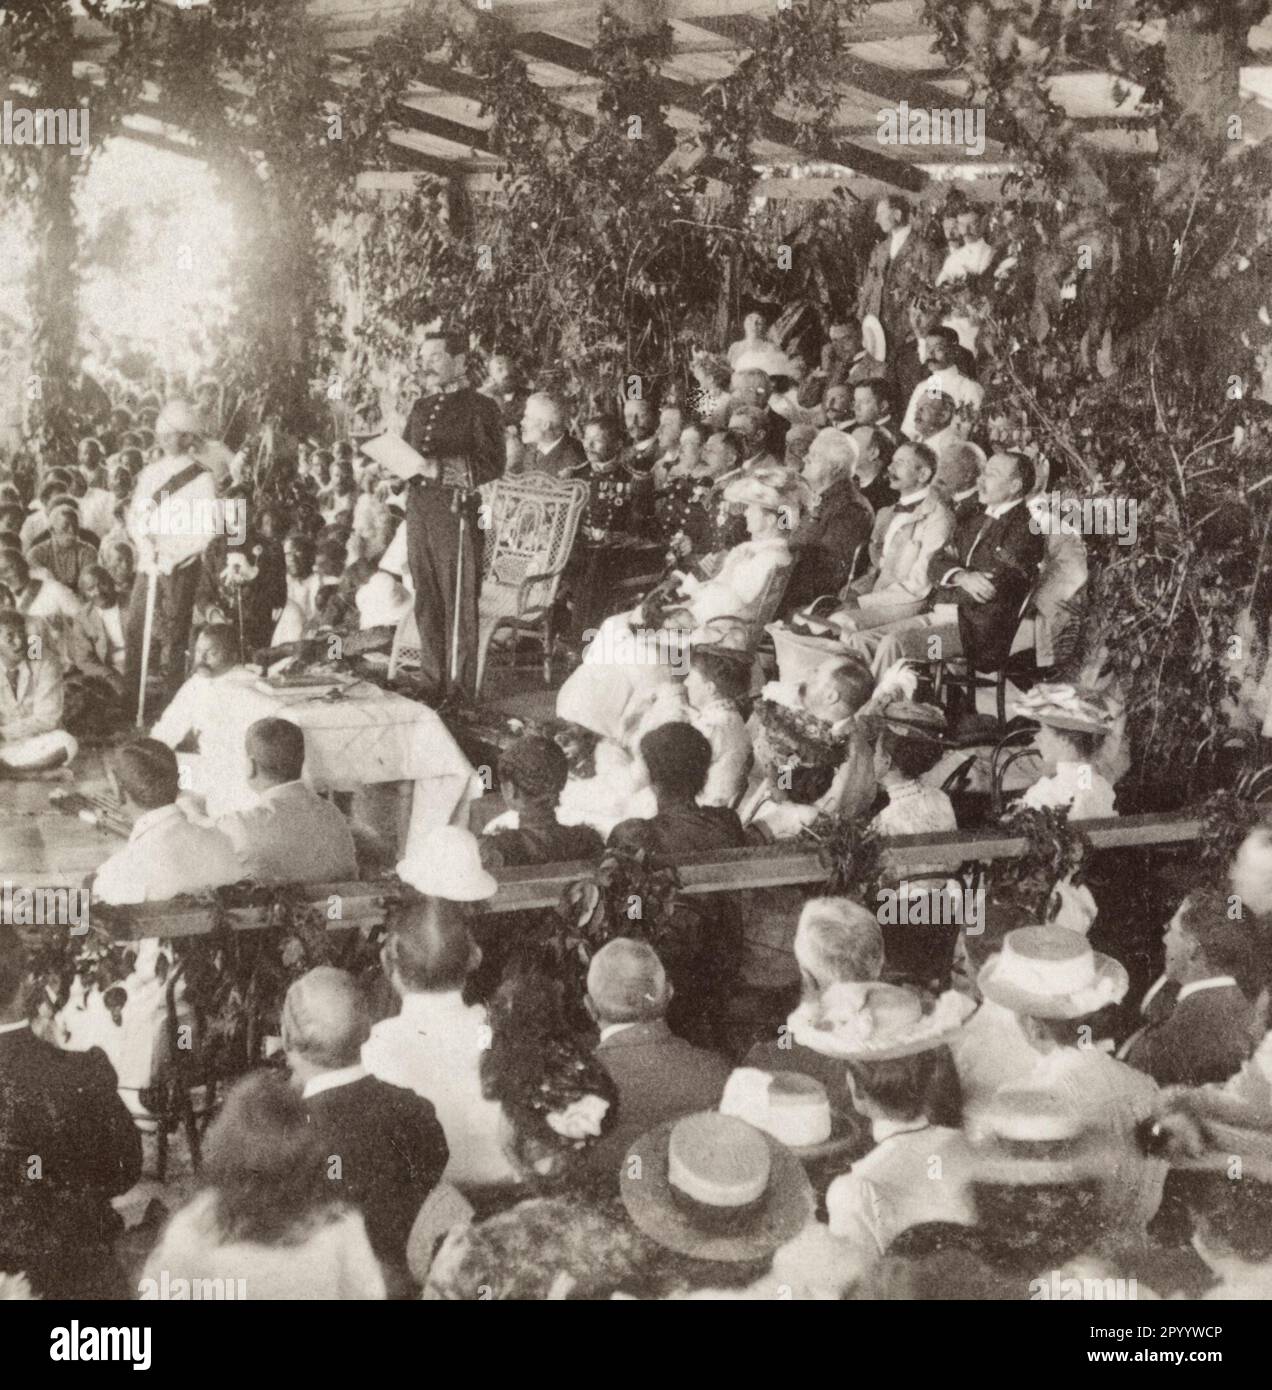 Cerimonie di incoronazione a Suva - consegna del messaggio del re Edoardo, Isole Fiji - ufficiale militare che legge il messaggio del re Edoardo ad un grande gruppo di occidentali e figiani, in occasione della sua incoronazione, intorno al 1902 Foto Stock